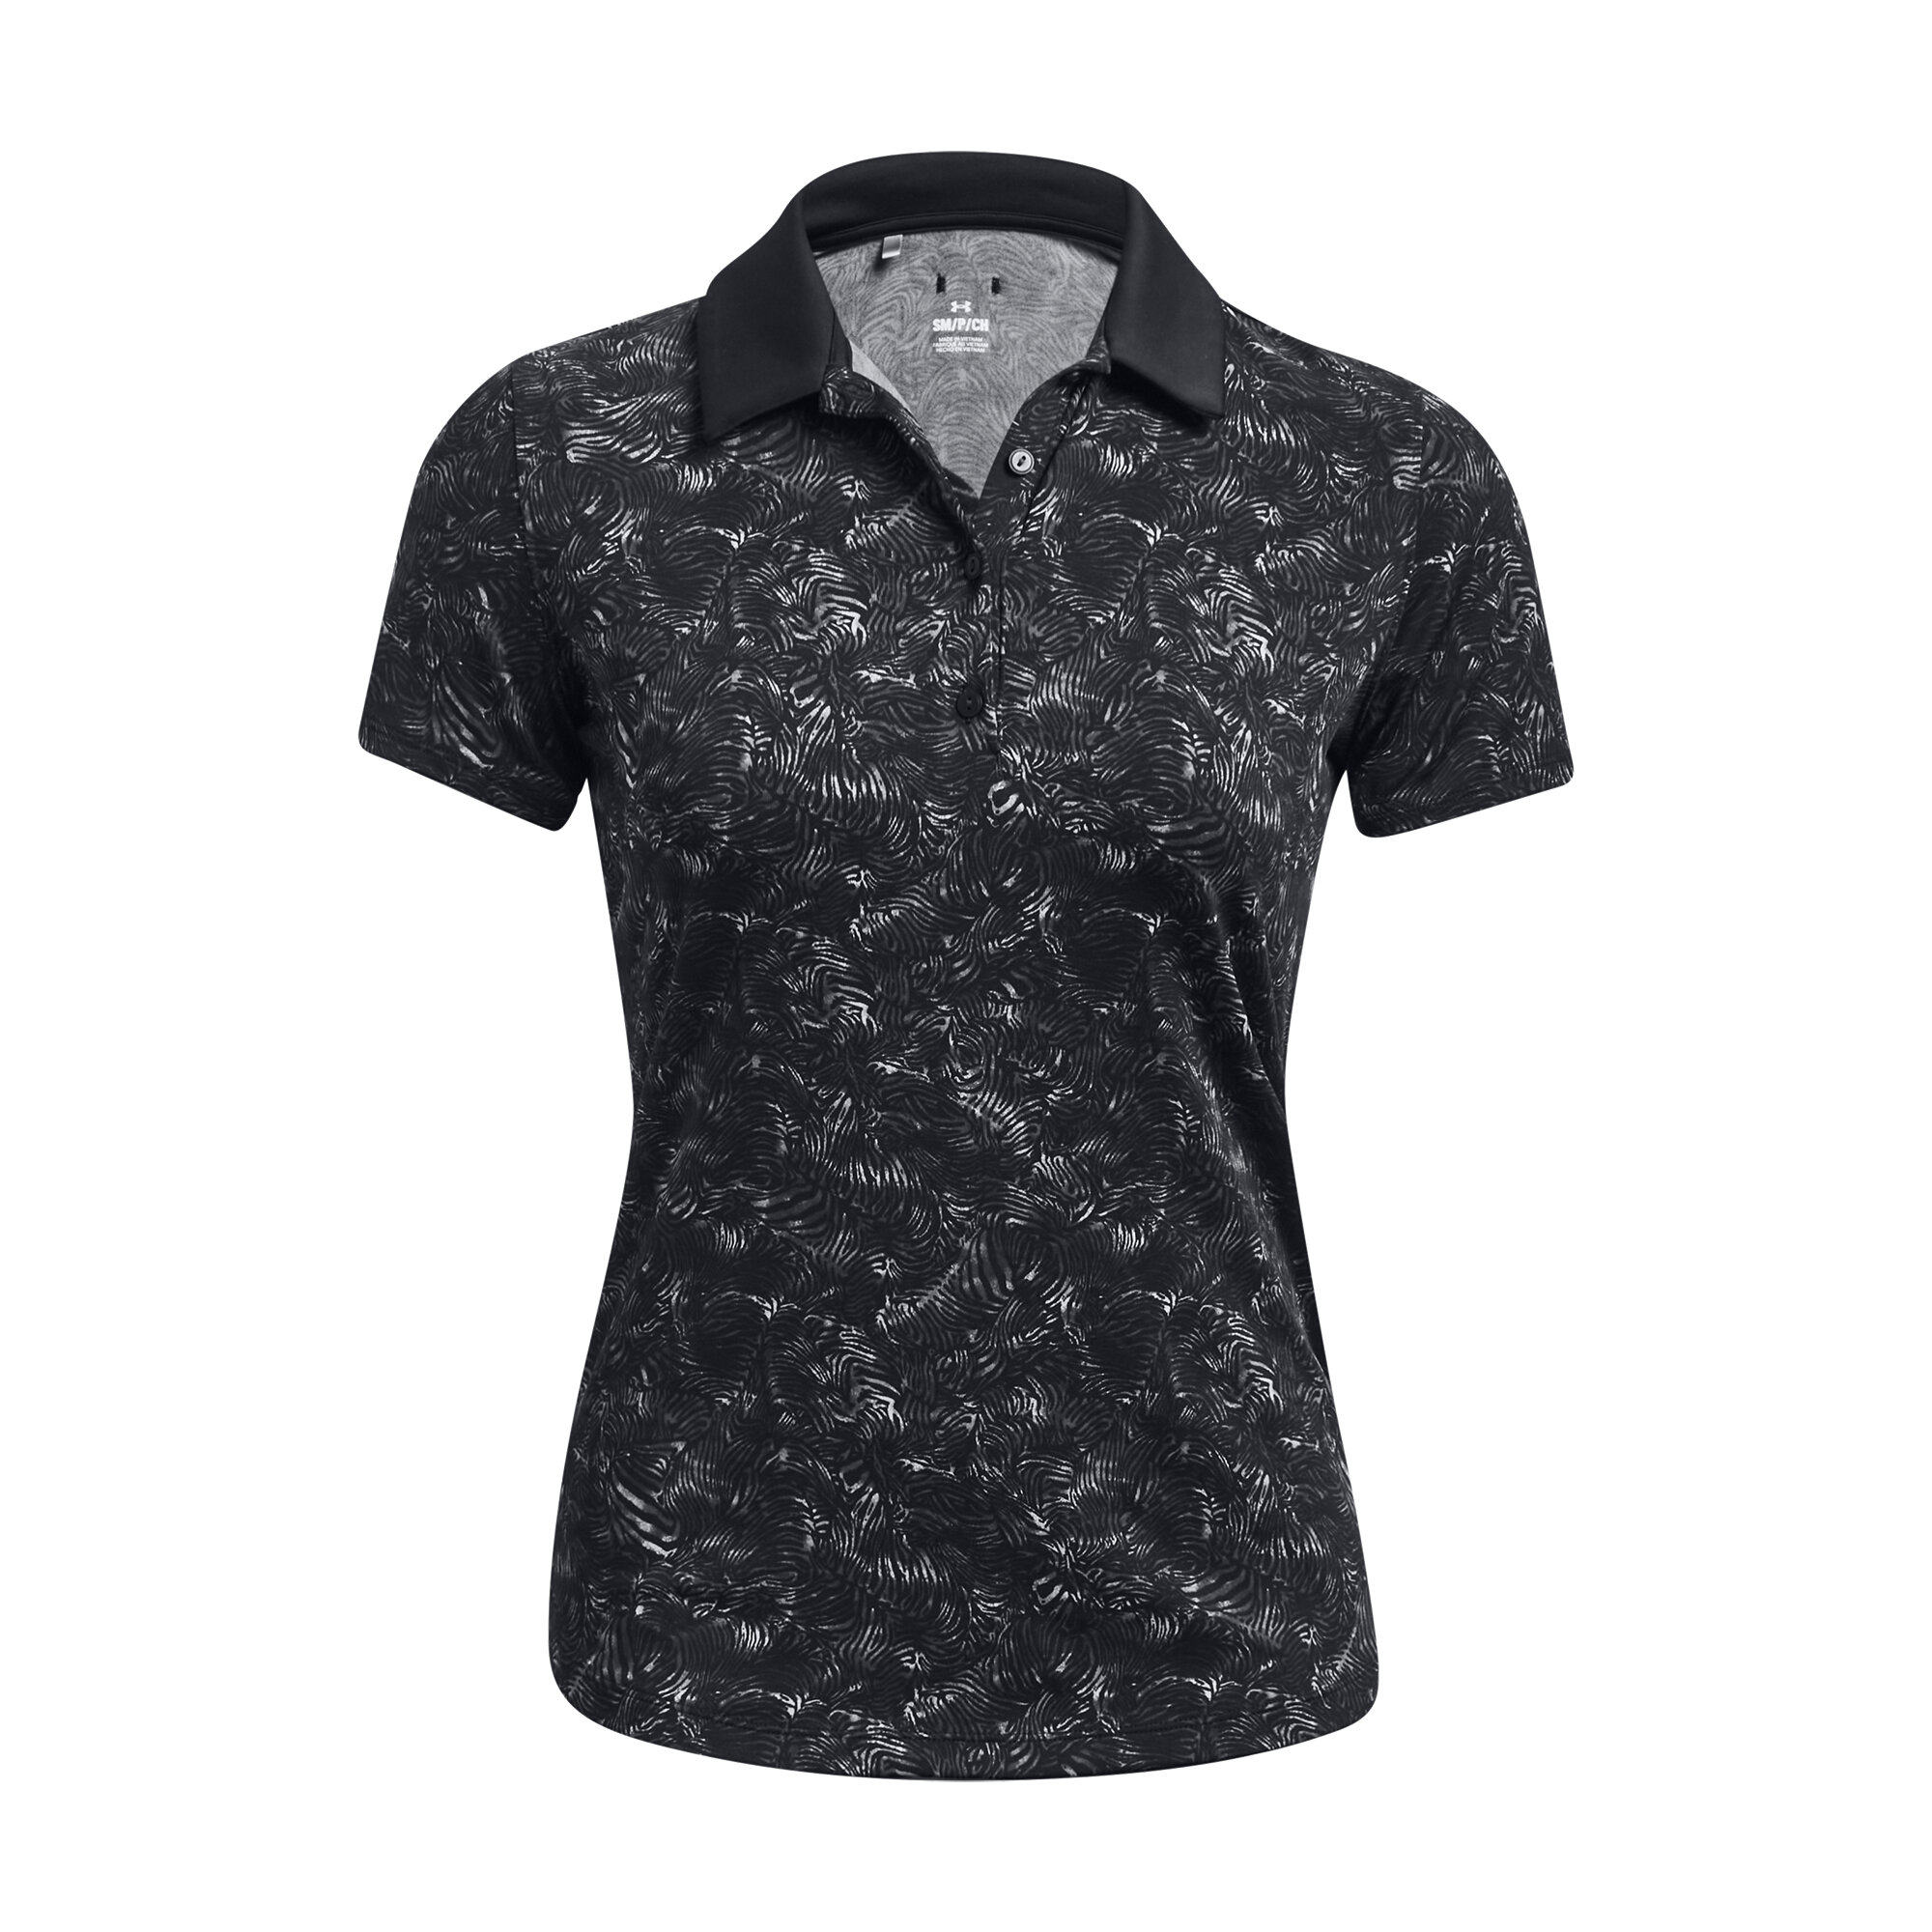 Under Armour Playoff Printed SS dámské golfové triko, černé, vel. L